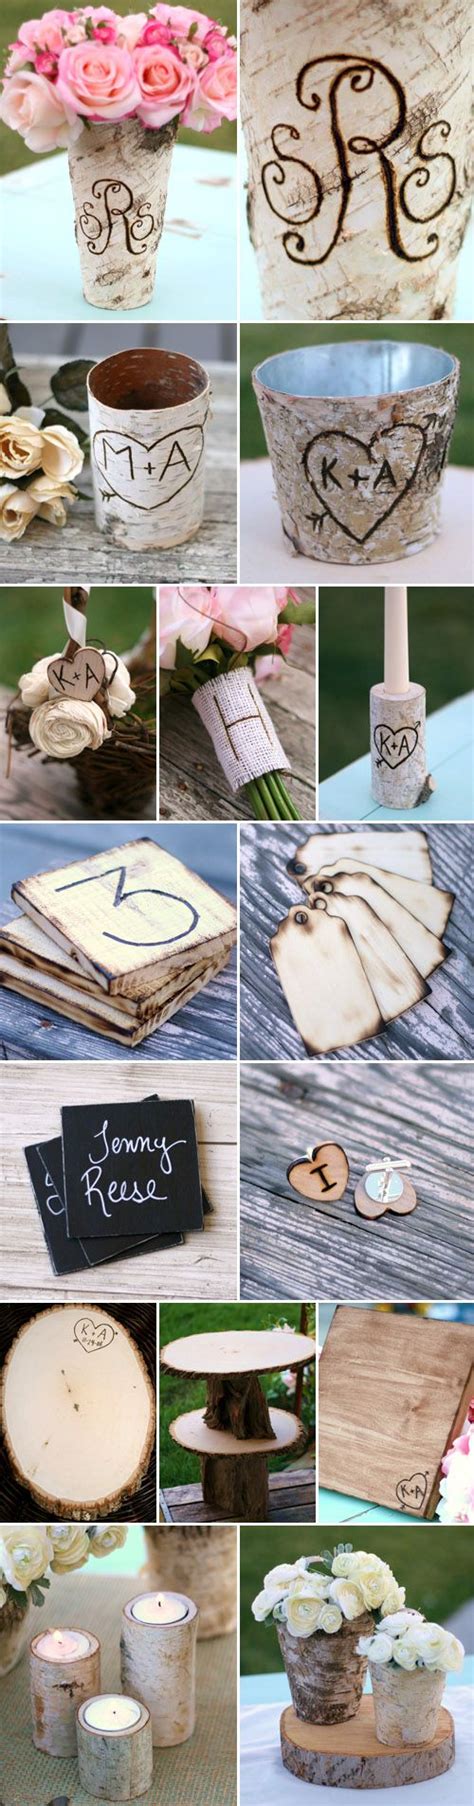 30 Rustic Birch Tree Wedding Ideas Deer Pearl Flowers